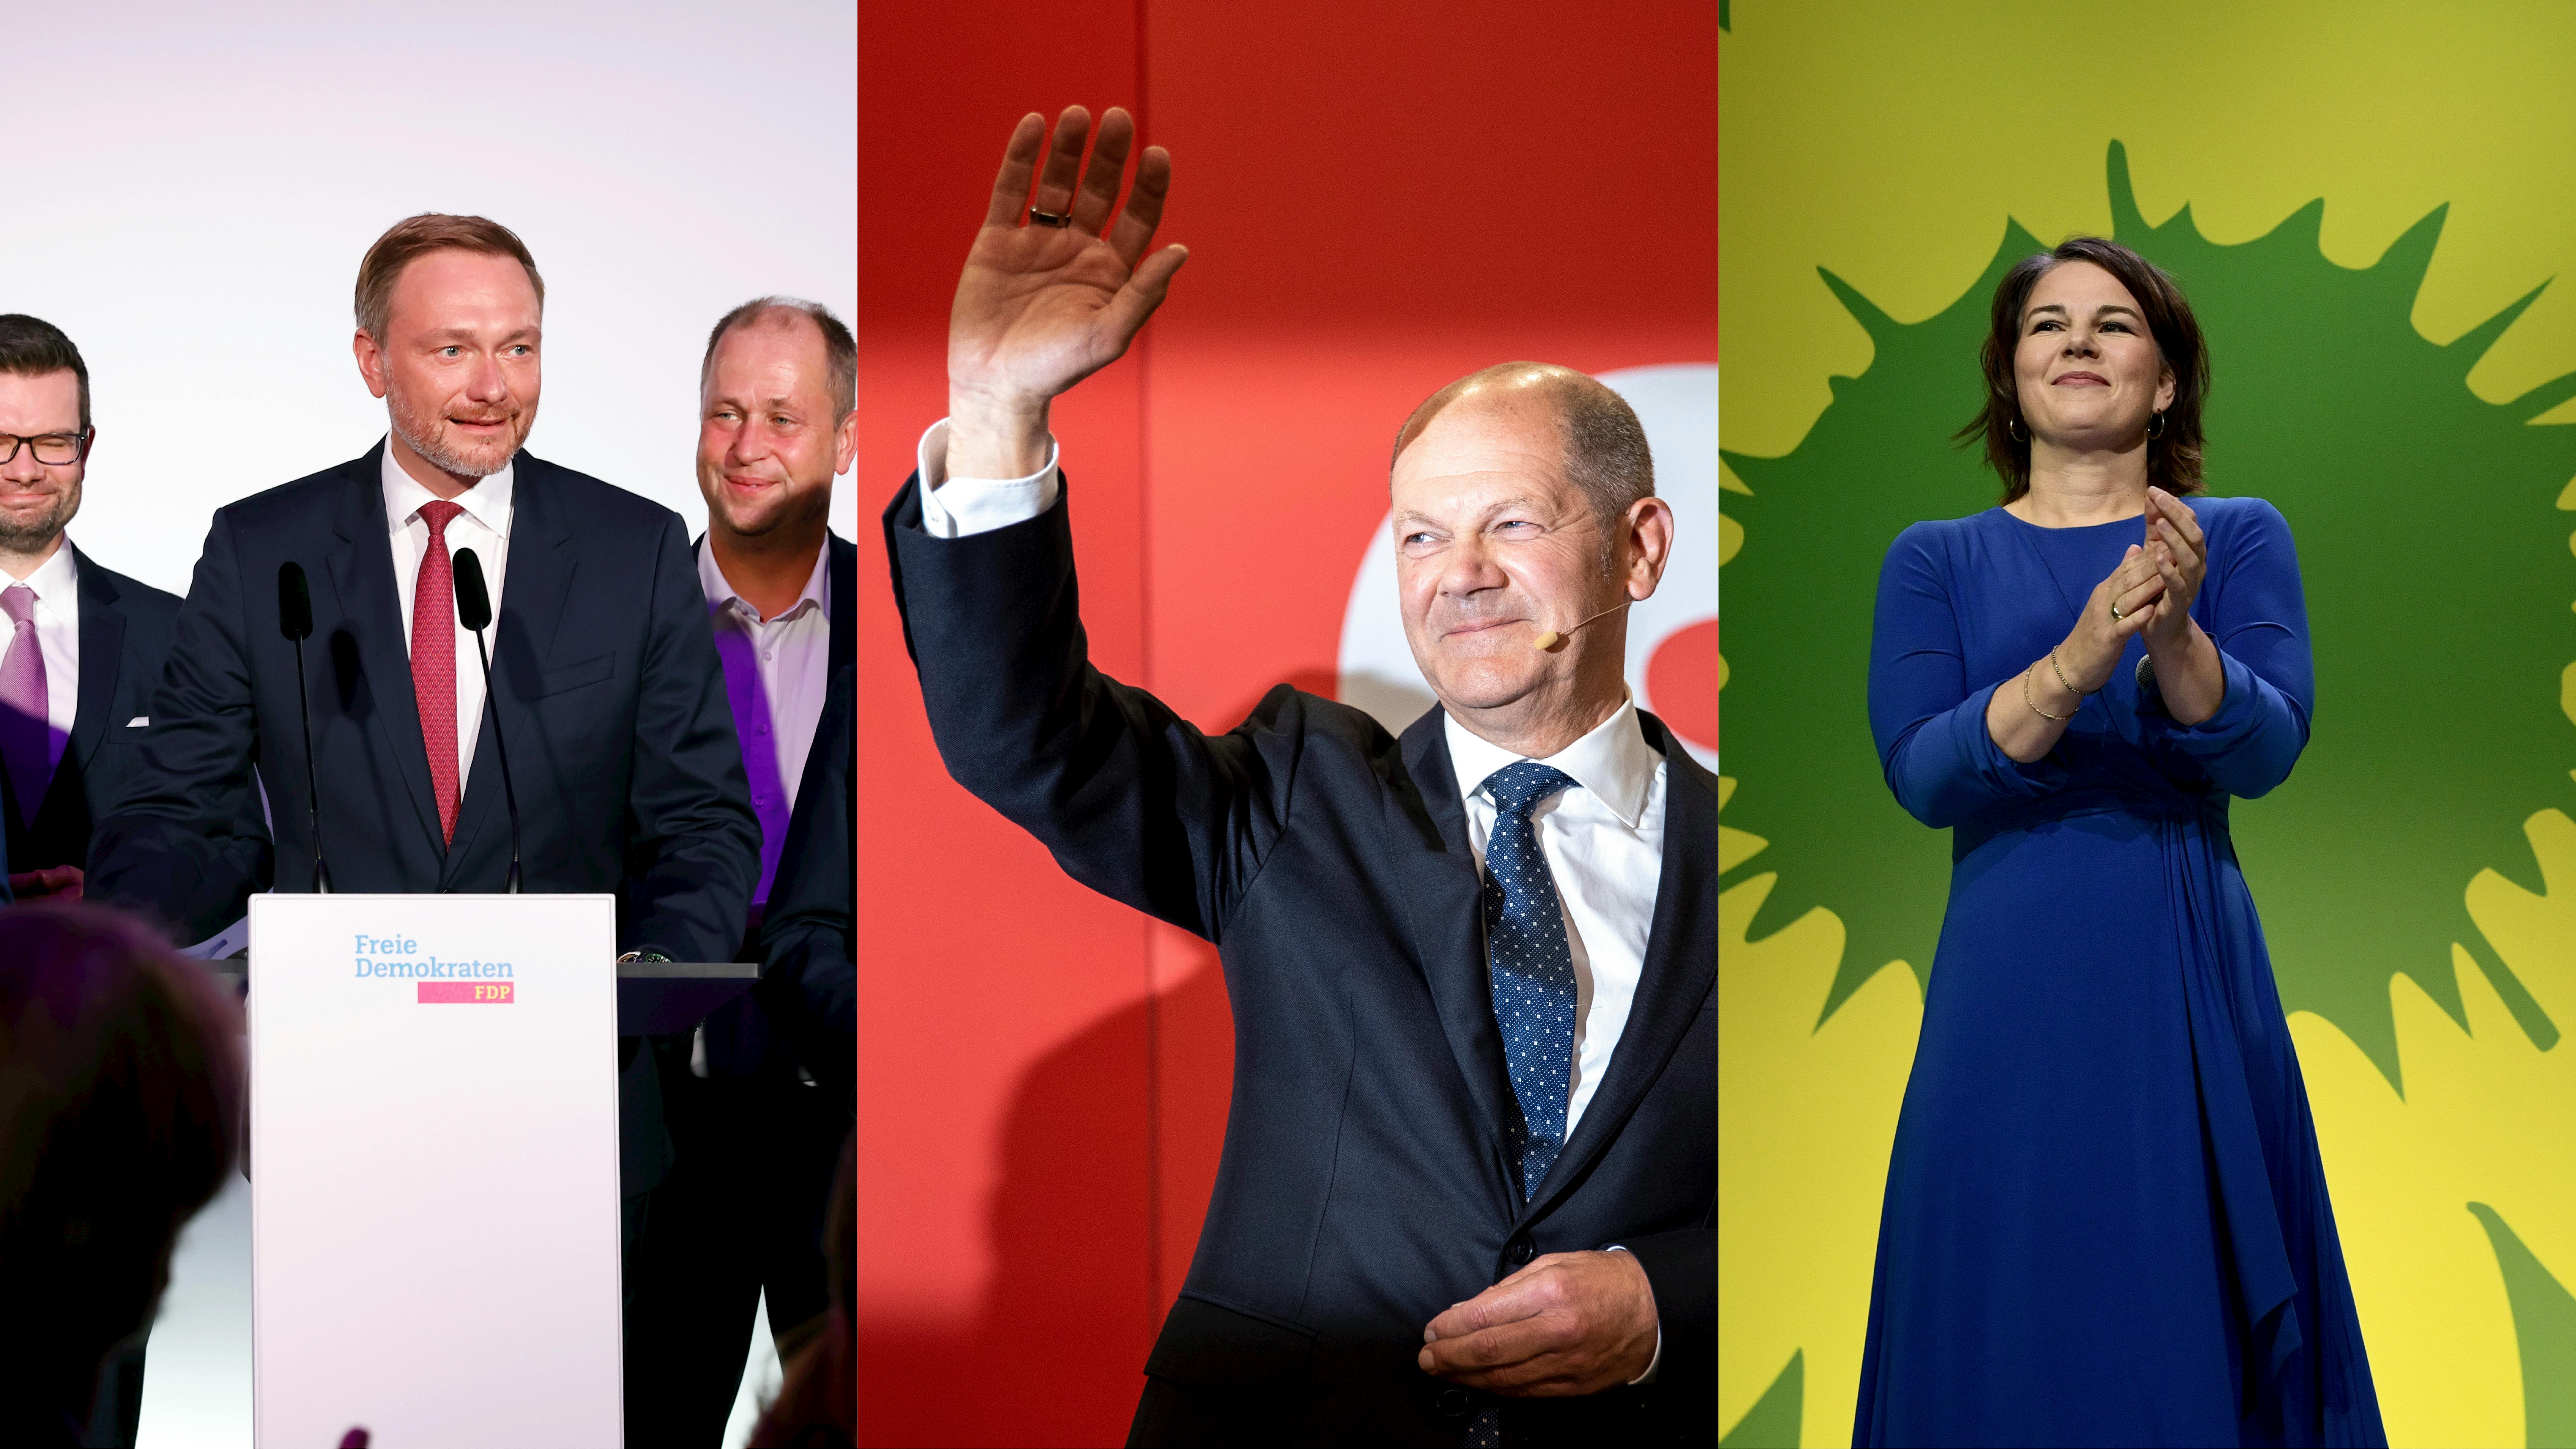 Dreiteiliges Bild, von links nach rechts: Am Wahlabend hält Christian Lindner eine Ansprache, Olaf Scholz winkt und wird vom Blitzlicht geblendet, Annalena Baerbock applaudiert vor dem Logo der Grünen. 